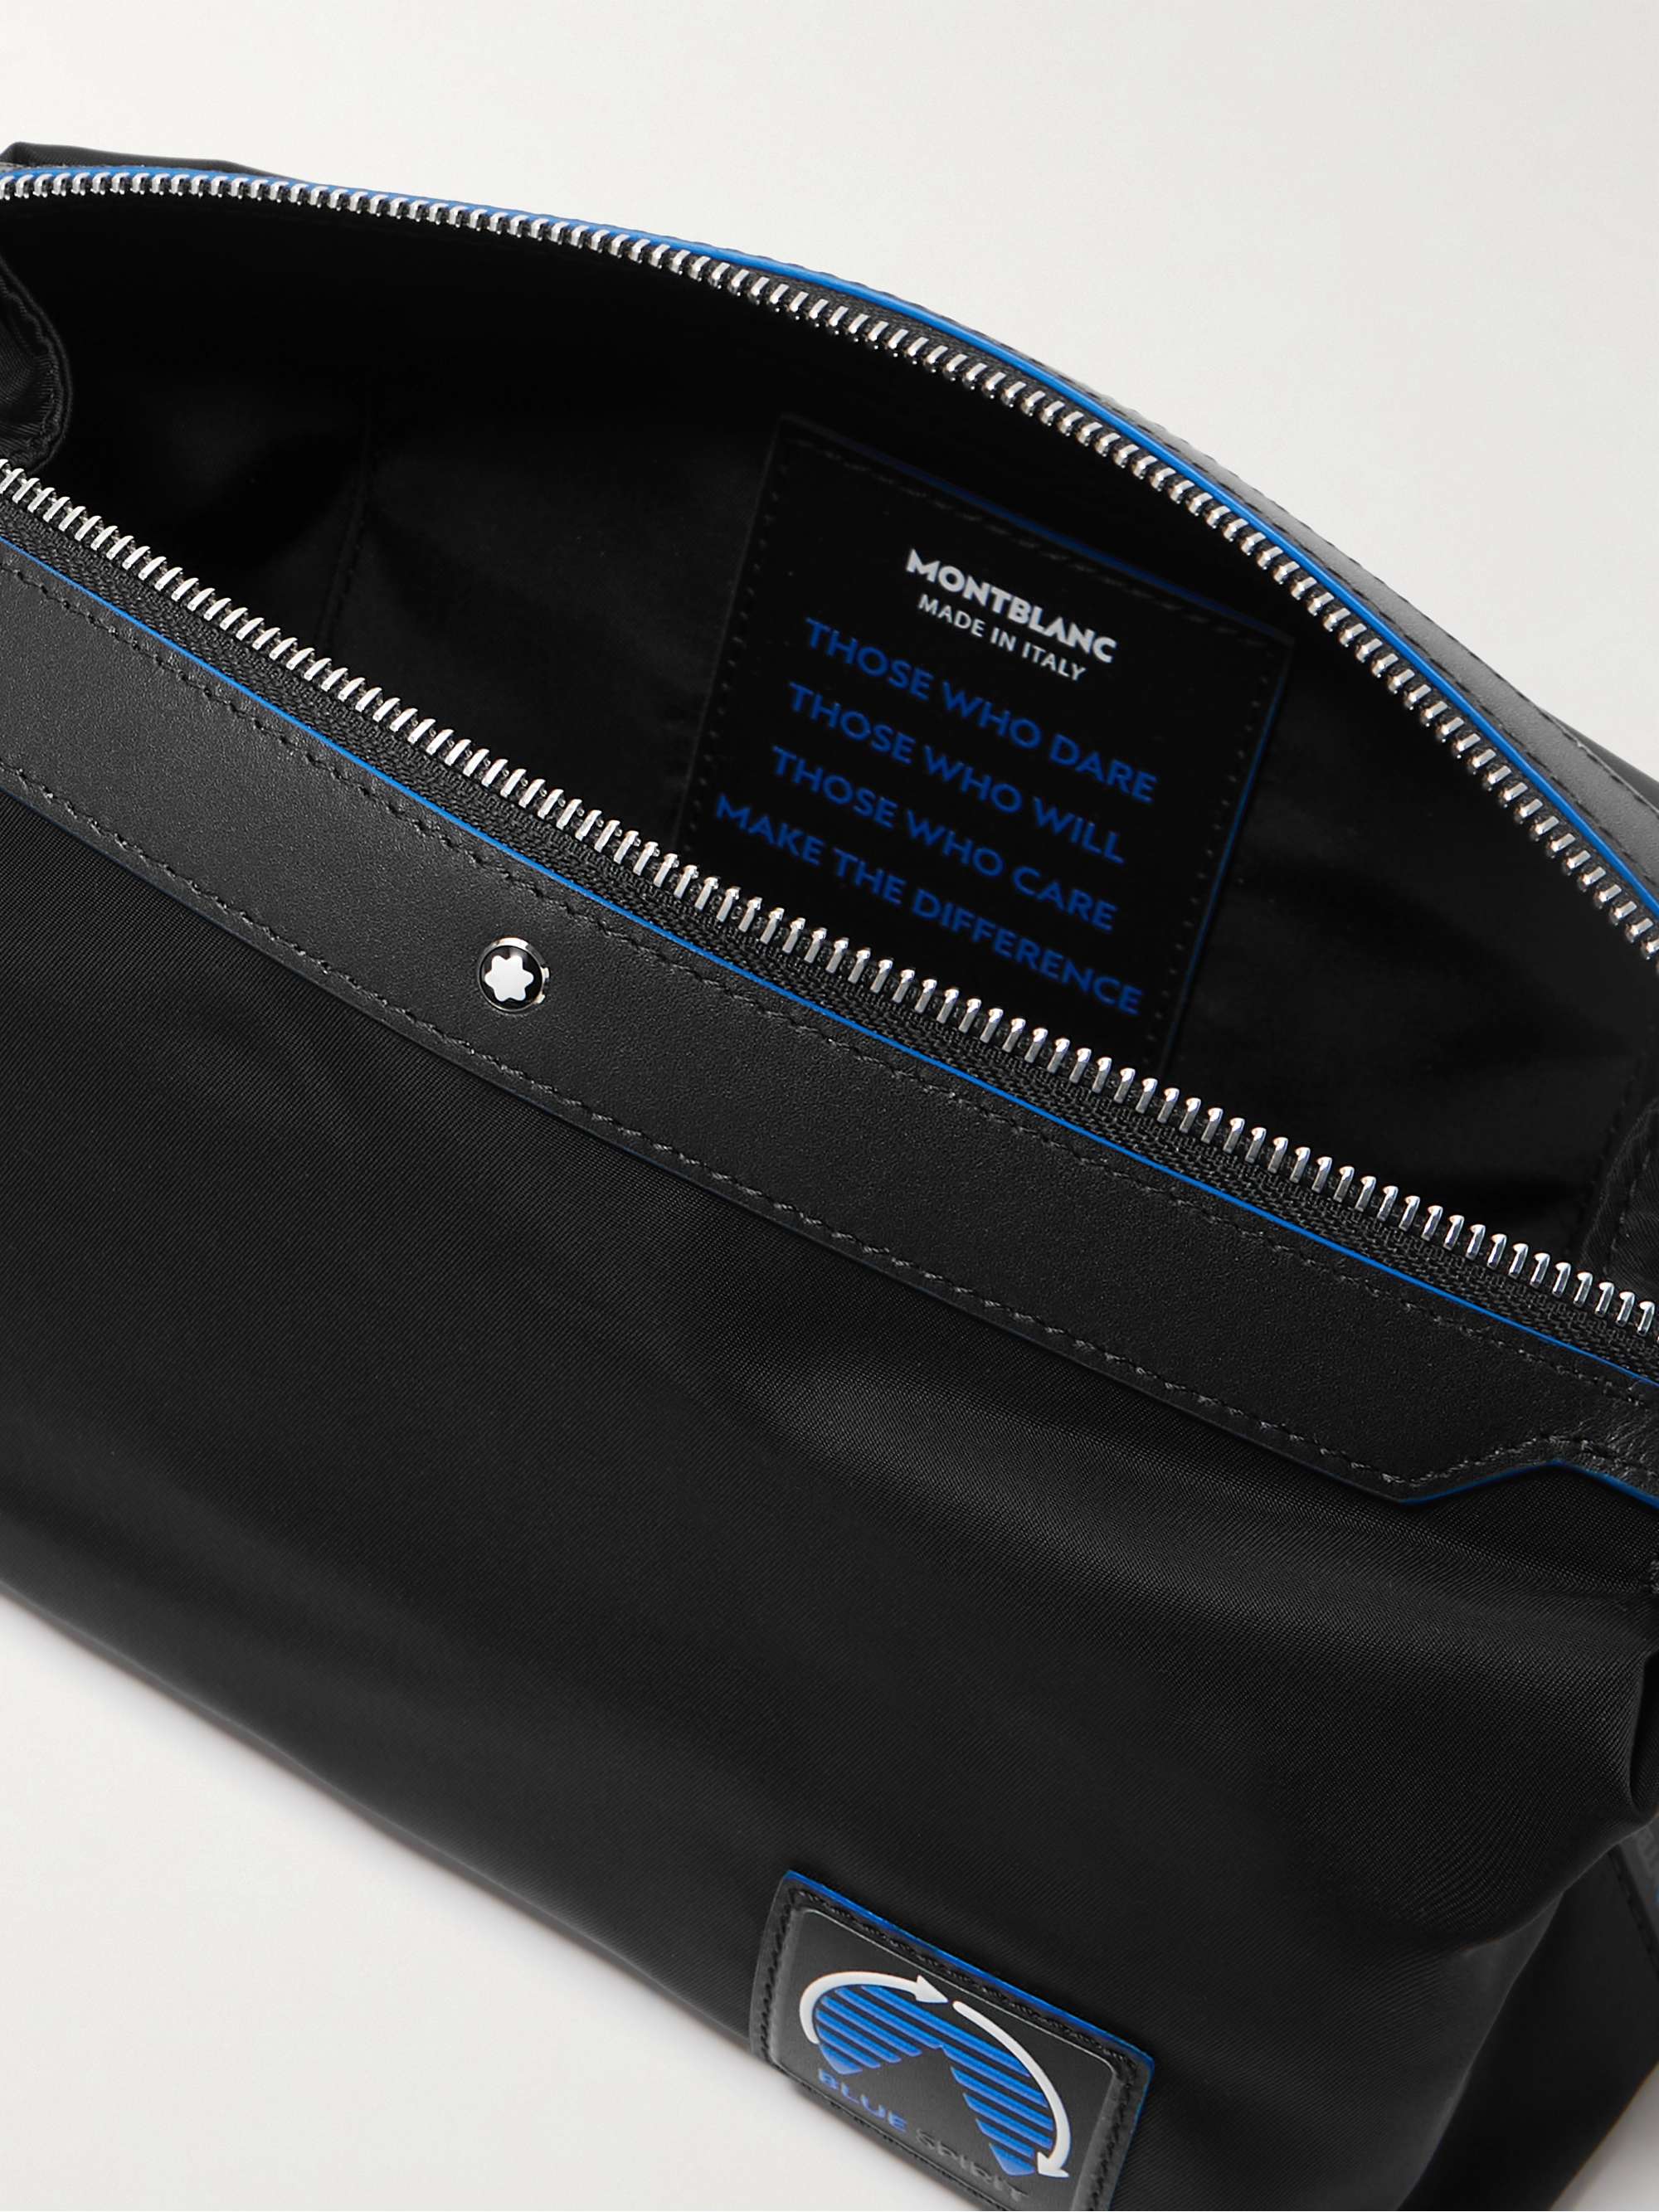 MONTBLANC Blue Spirit Leather-Trimmed ECONYL Wash Bag